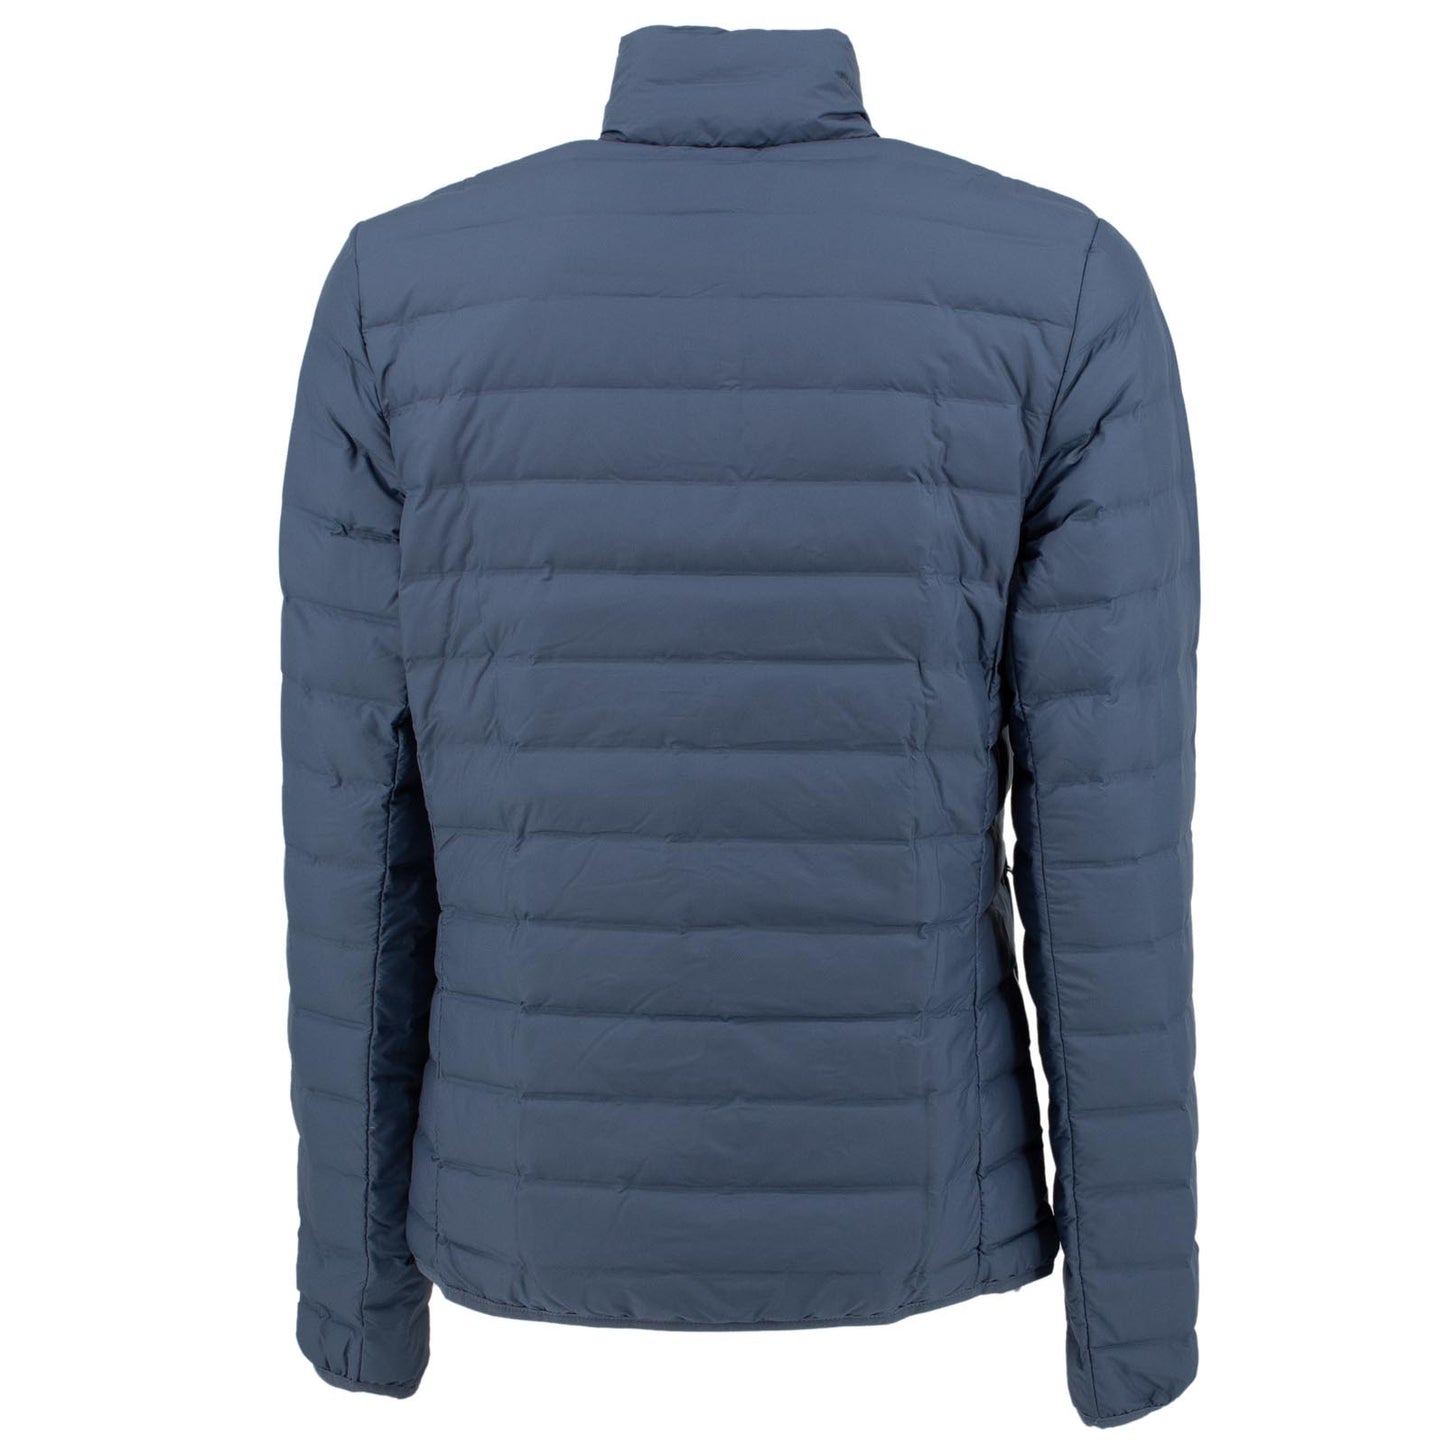 Adidas Outdoor Varilite Soft Jacket Herren Daunenjacke Winterjacke Blau DZ1422